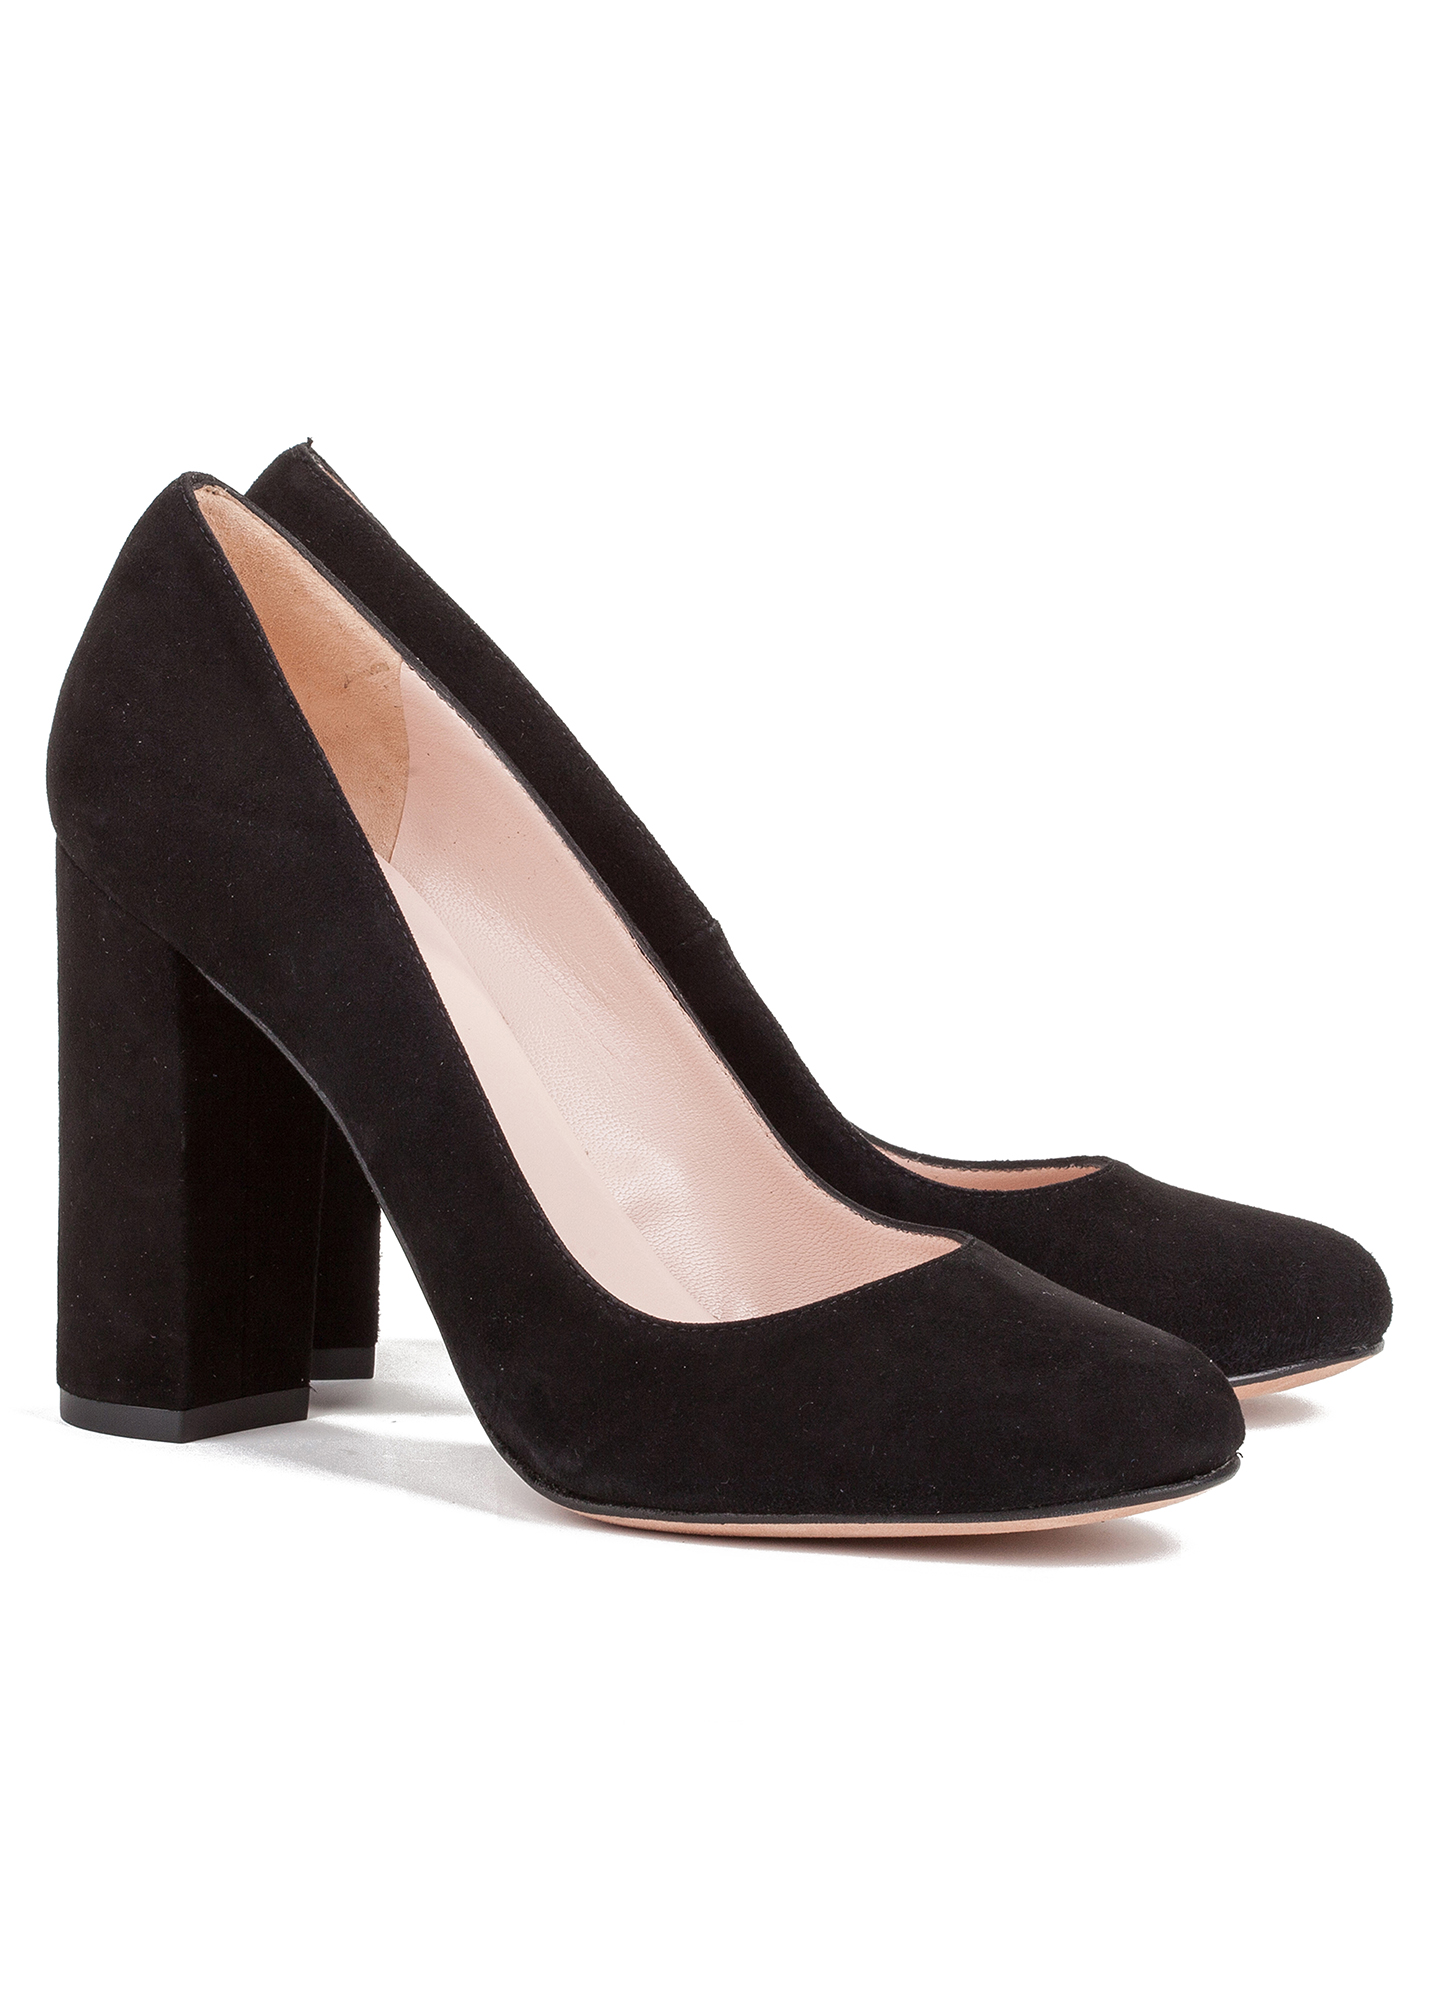 Block high heel pumps in black suede - online shoe store Pura Lopez ...